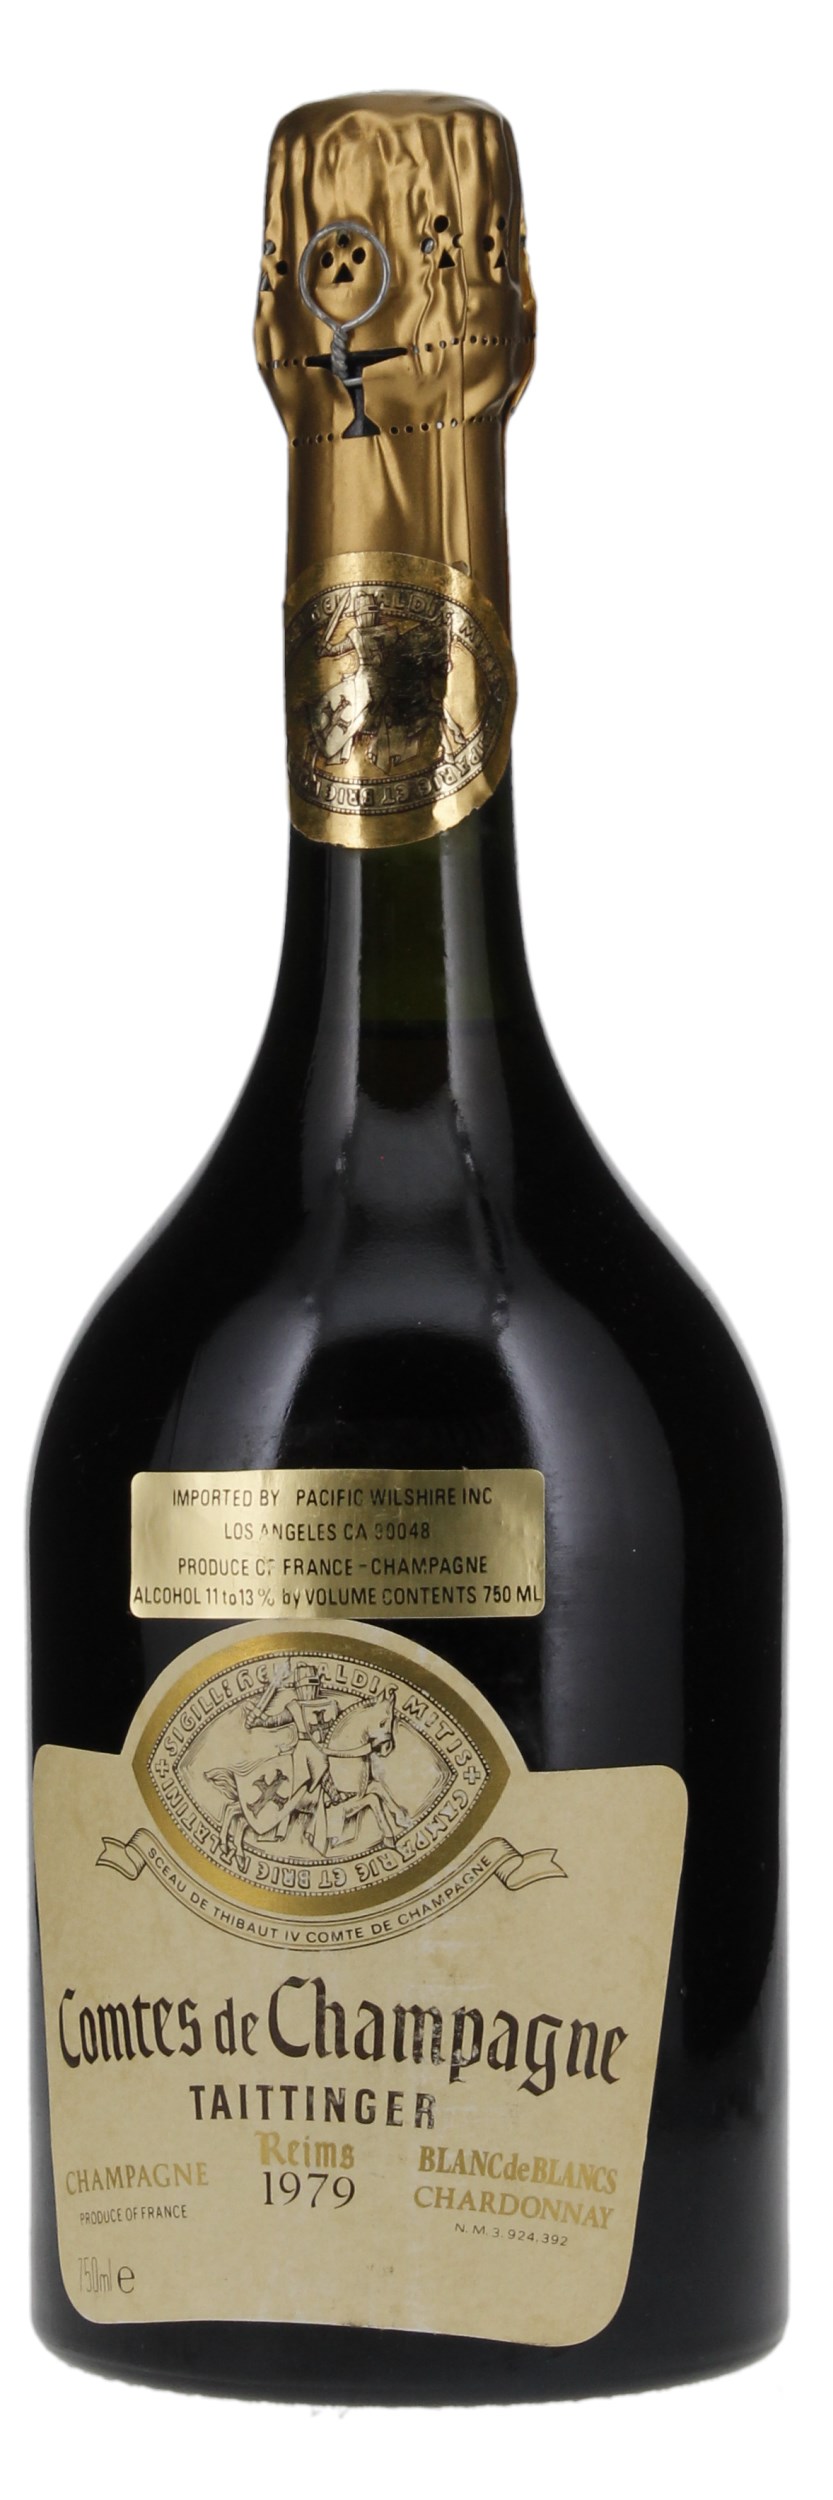 1979 Taittinger Comtes de Champagne Blanc de Blancs, 750ml